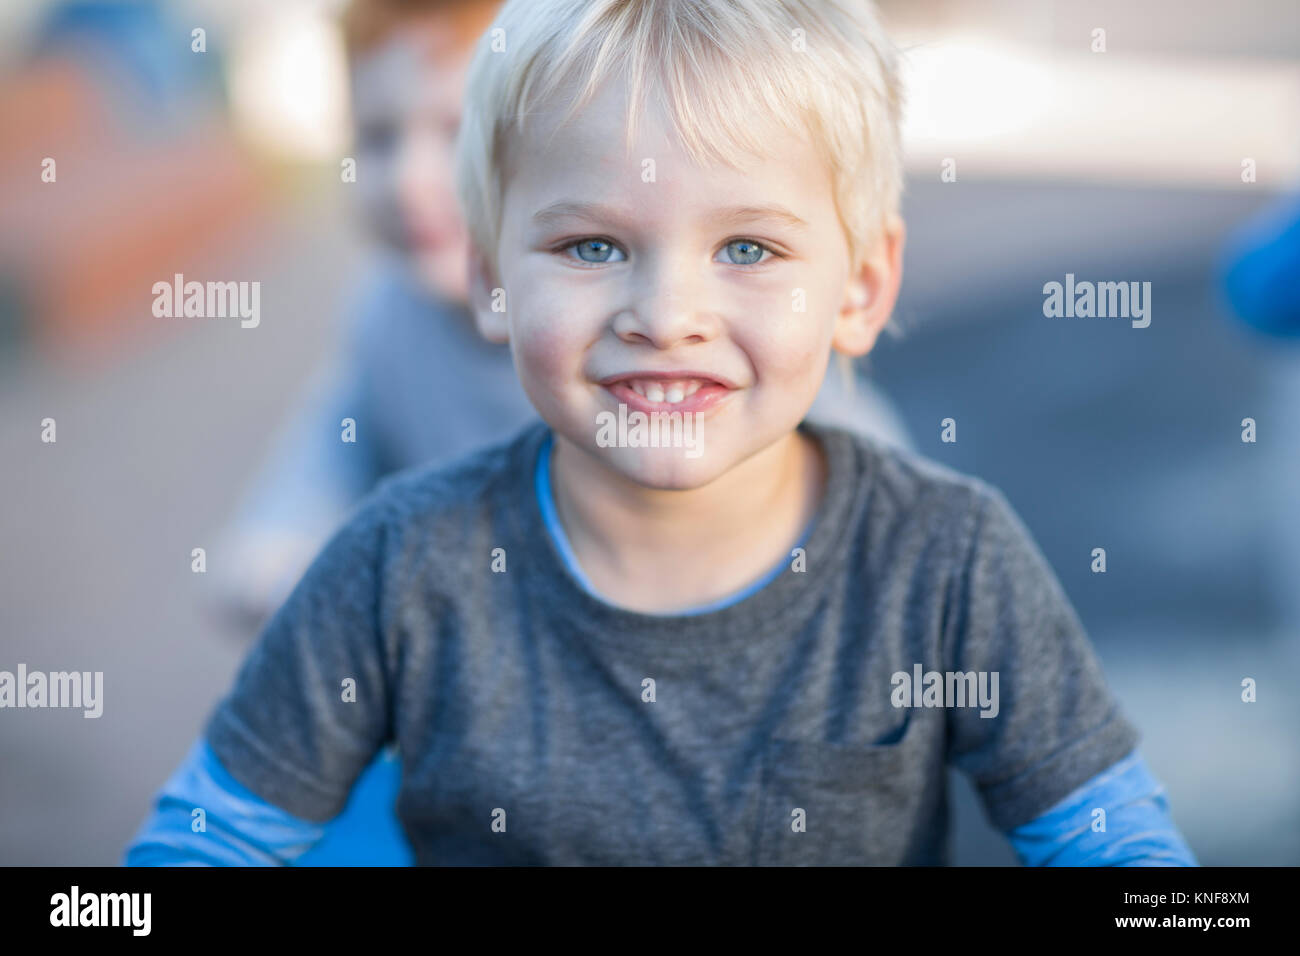 Blond haired boy at preschool, portrait in garden Stock Photo